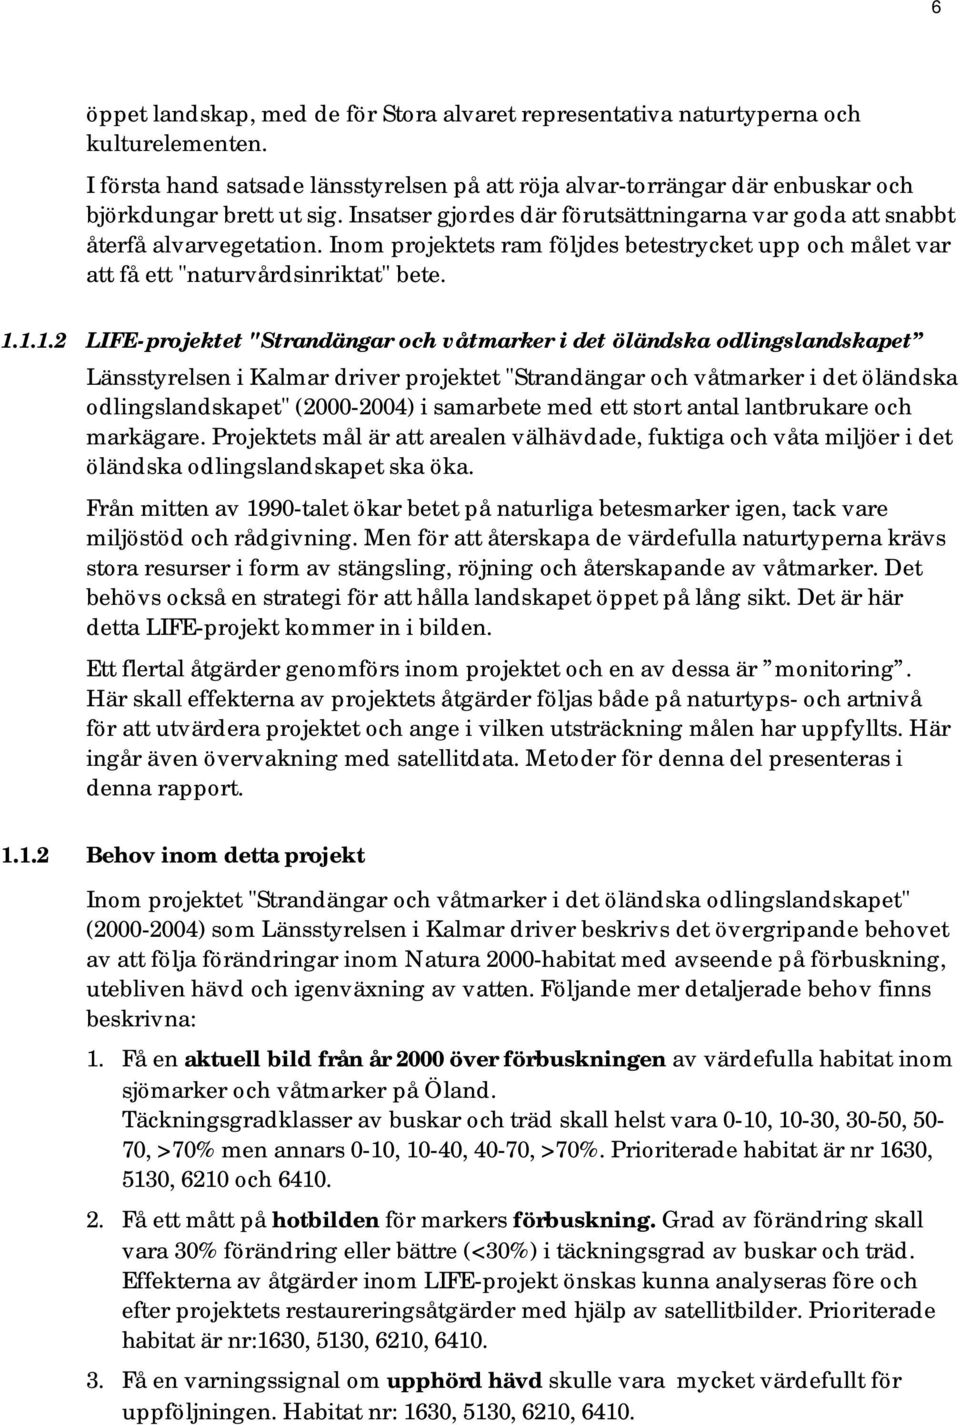 1.1.2 LIFE-projektet "Strandängar och våtmarker i det öländska odlingslandskapet Länsstyrelsen i Kalmar driver projektet "Strandängar och våtmarker i det öländska odlingslandskapet" (2000-2004) i